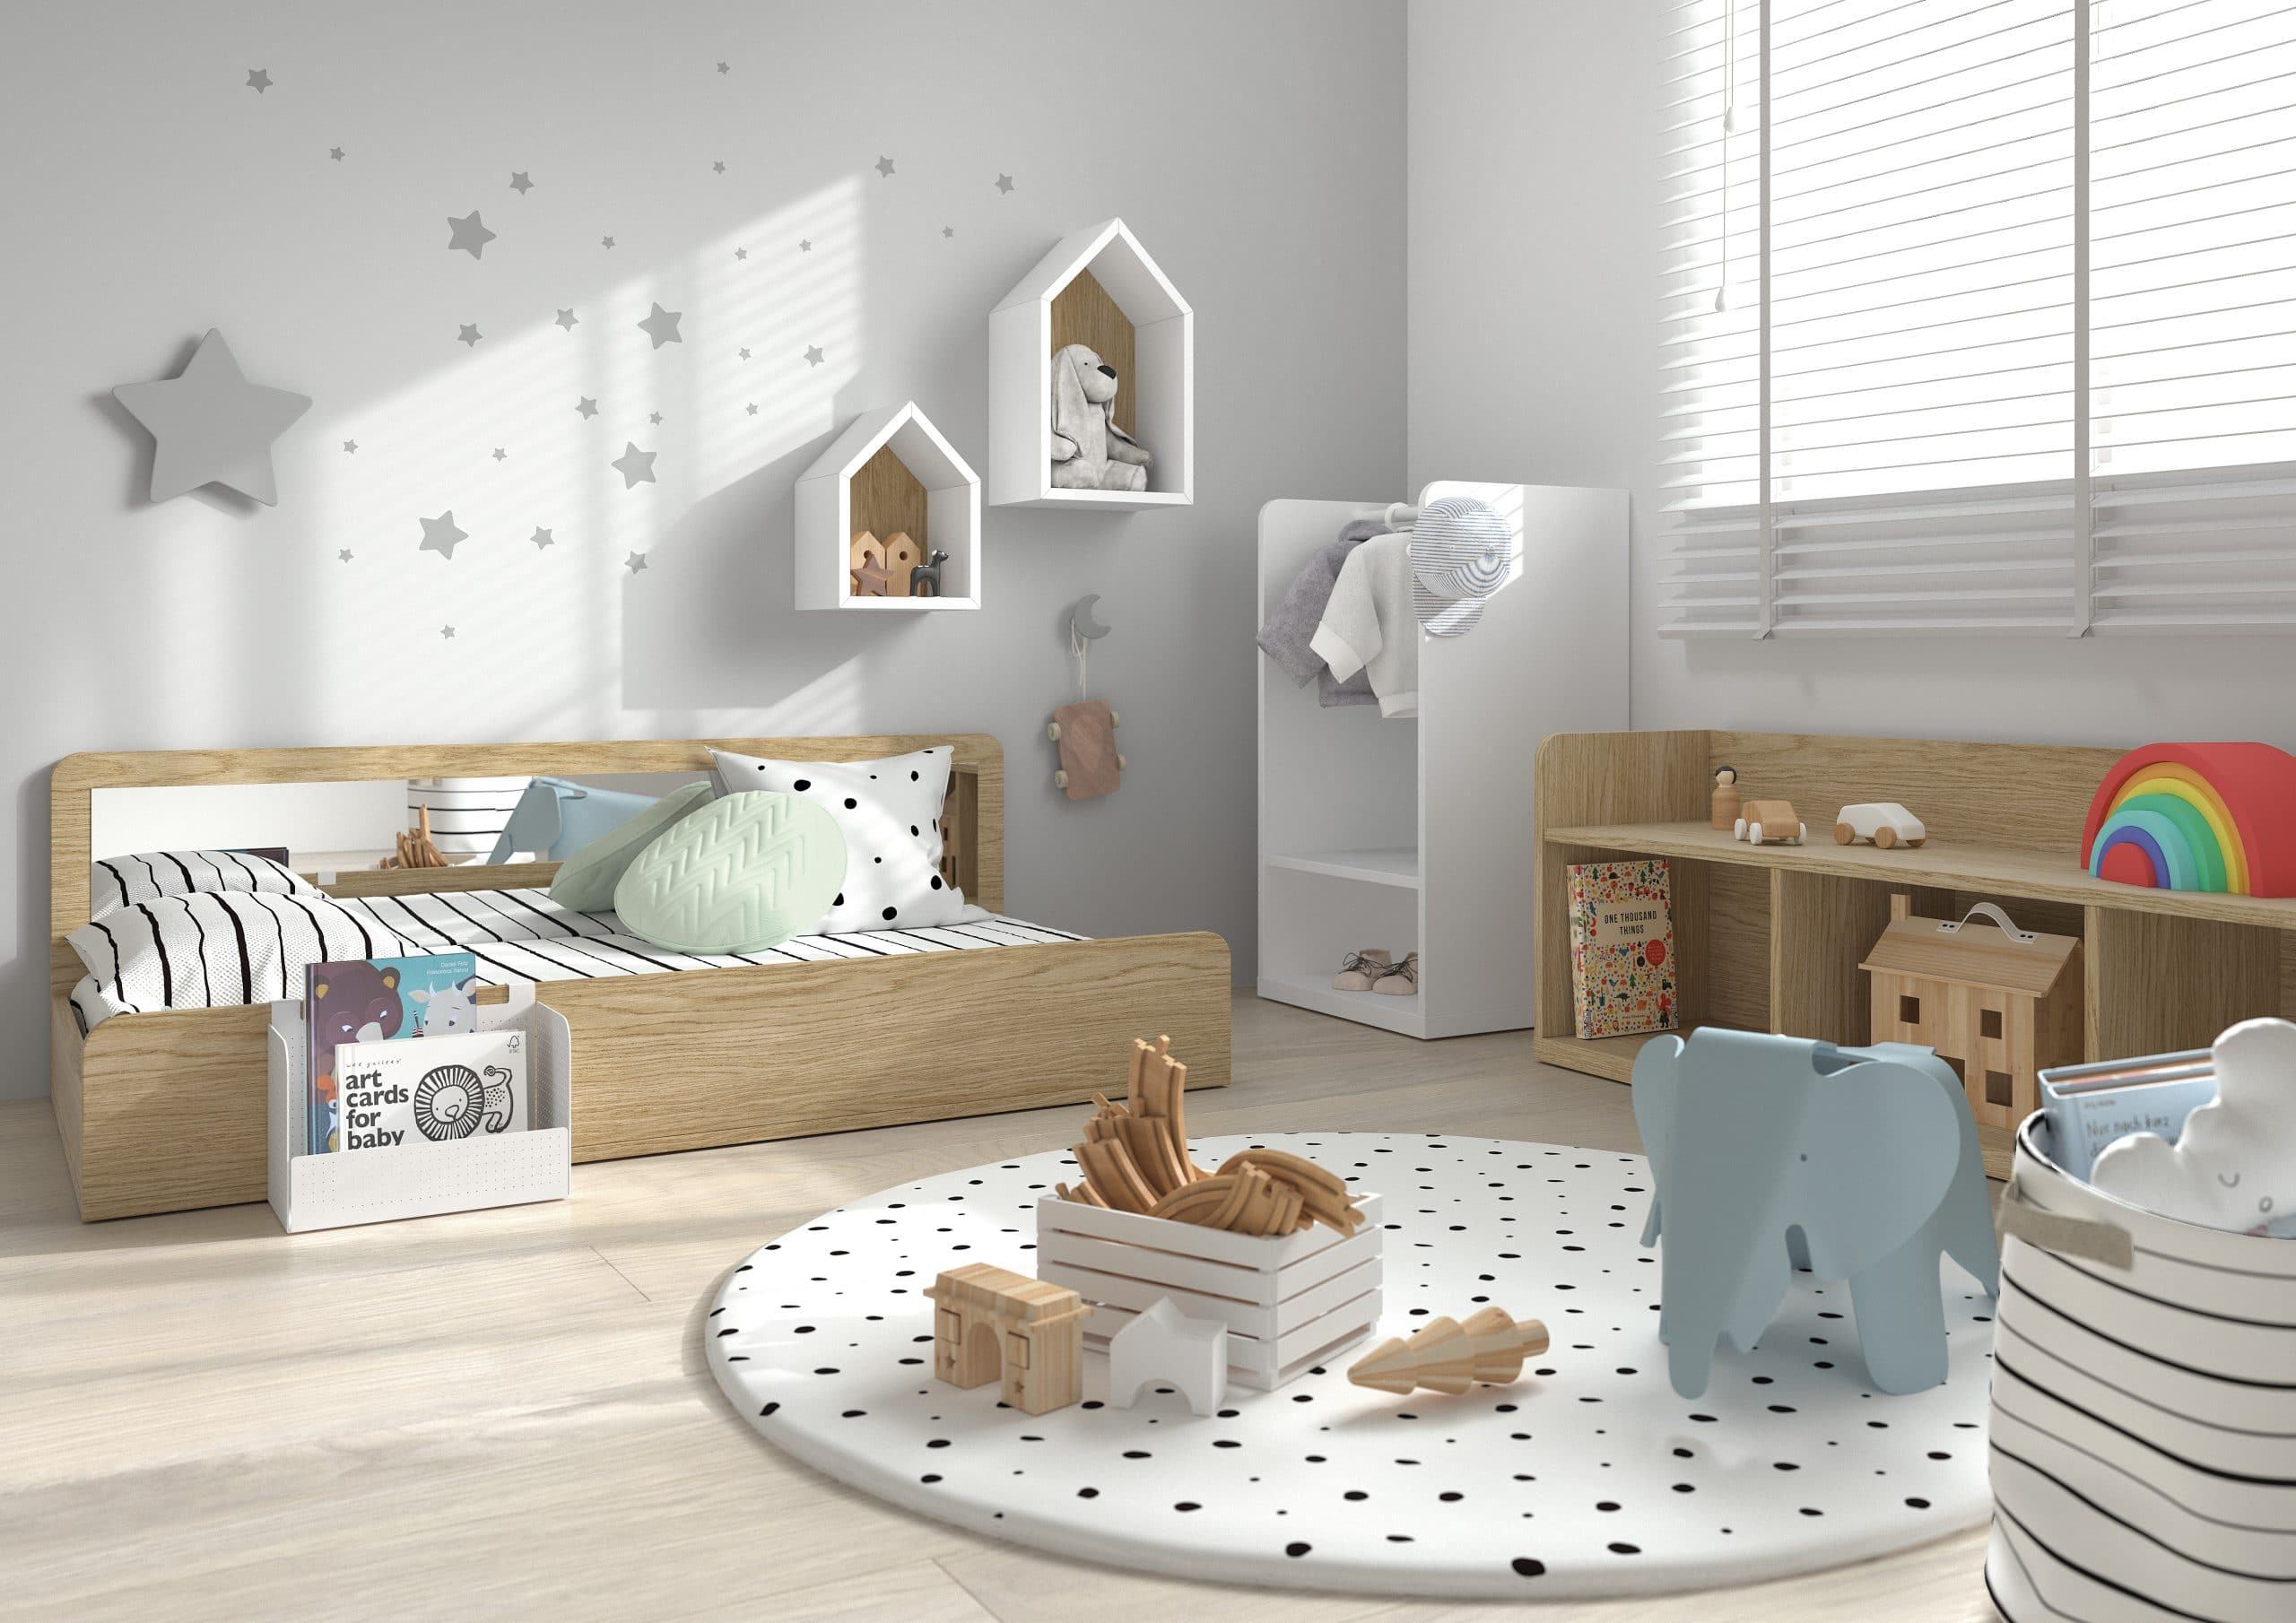 Concurso Lujoso sección Muebles Montessori para habitaciones infantiles - ROS